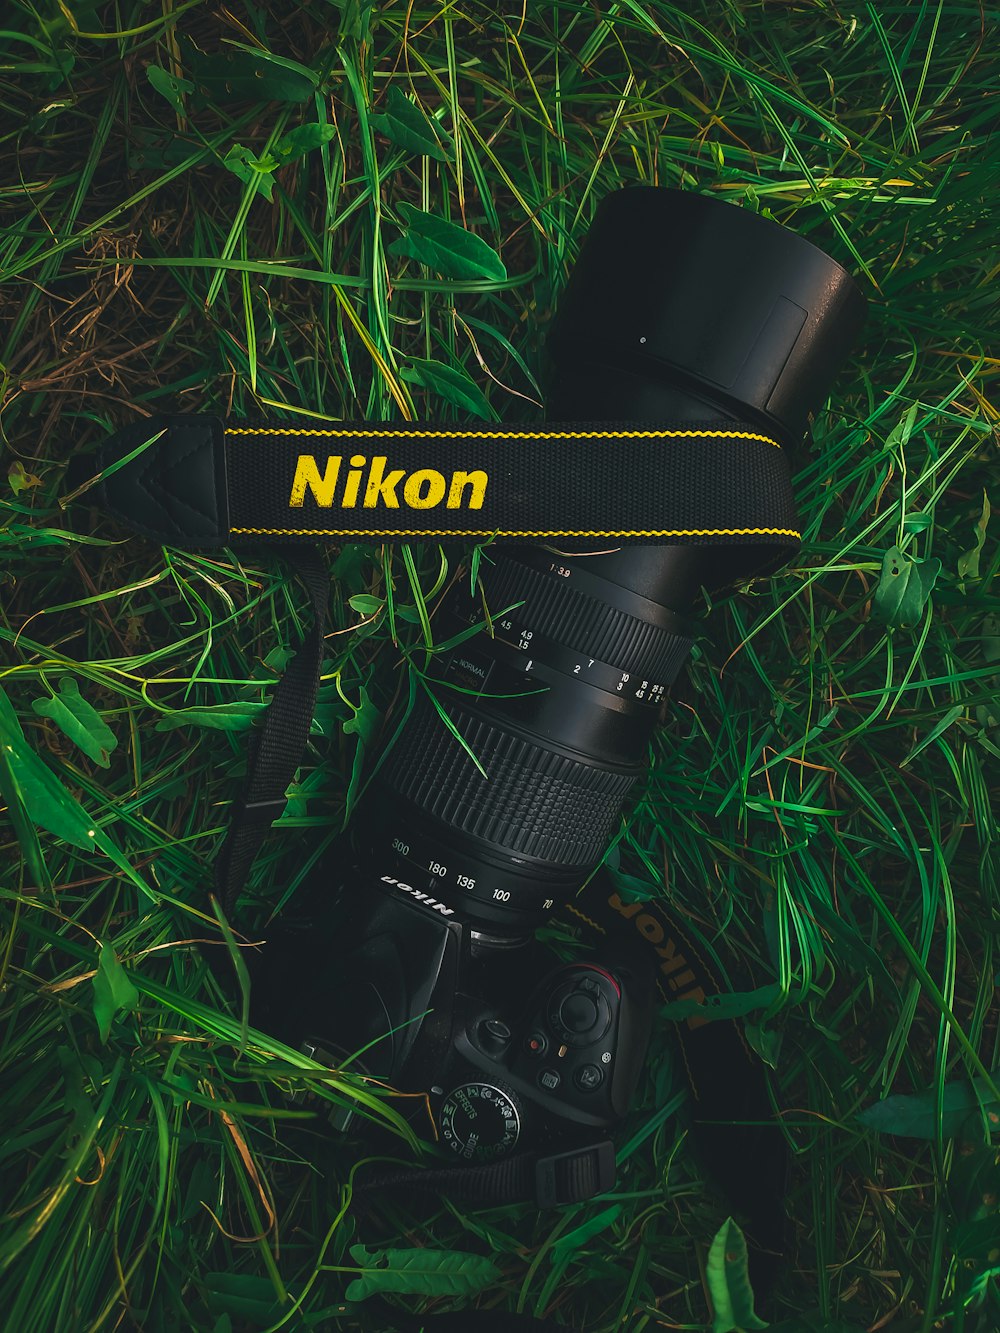 Una fotocamera Nikon posata nell'erba